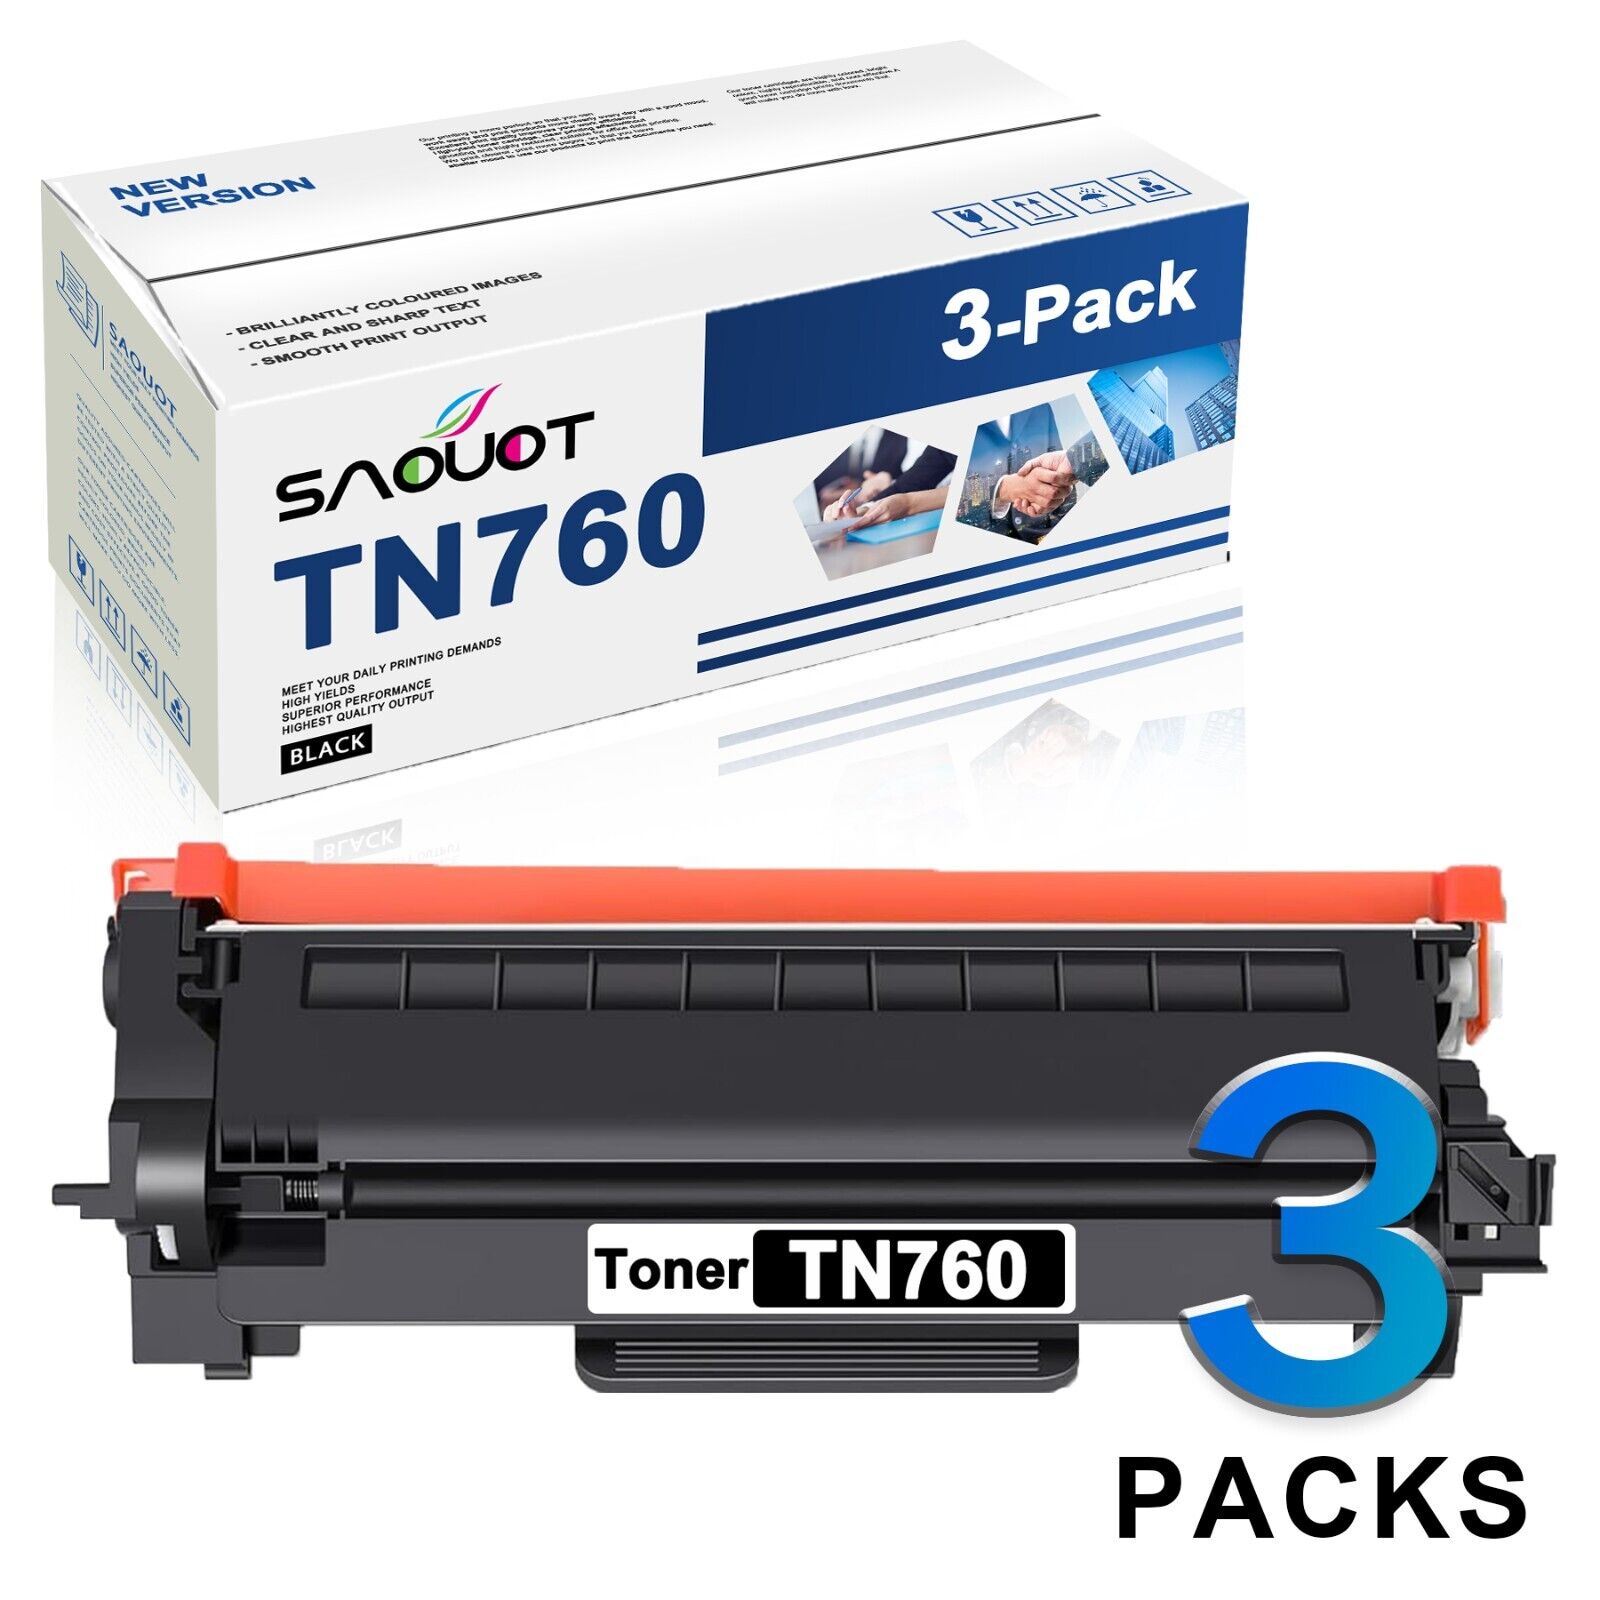 TN760 TN-760 Toner Cartridge Replacement for Brother tn760 TN 760 HL-L2390DW